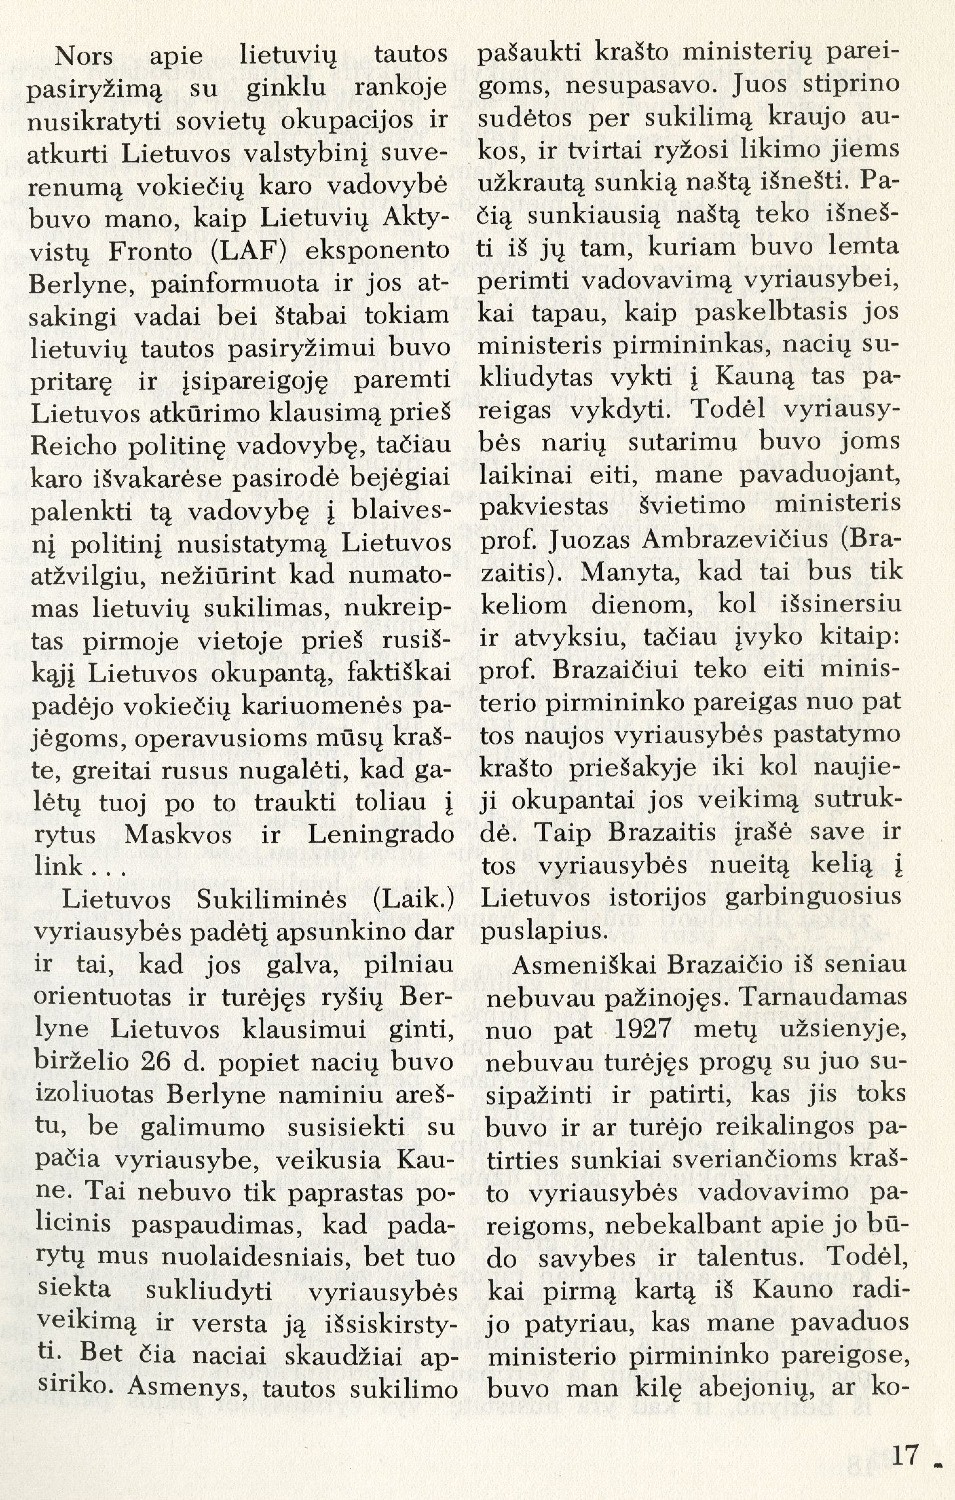 Brazaičio politinė strategija: [apie jo veiklą Lietuvos Laikinojoje vyriausybėje] / Kazys Škirpa // Į laisvę. – 1975, Nr. 65, p. 16–27, 50.